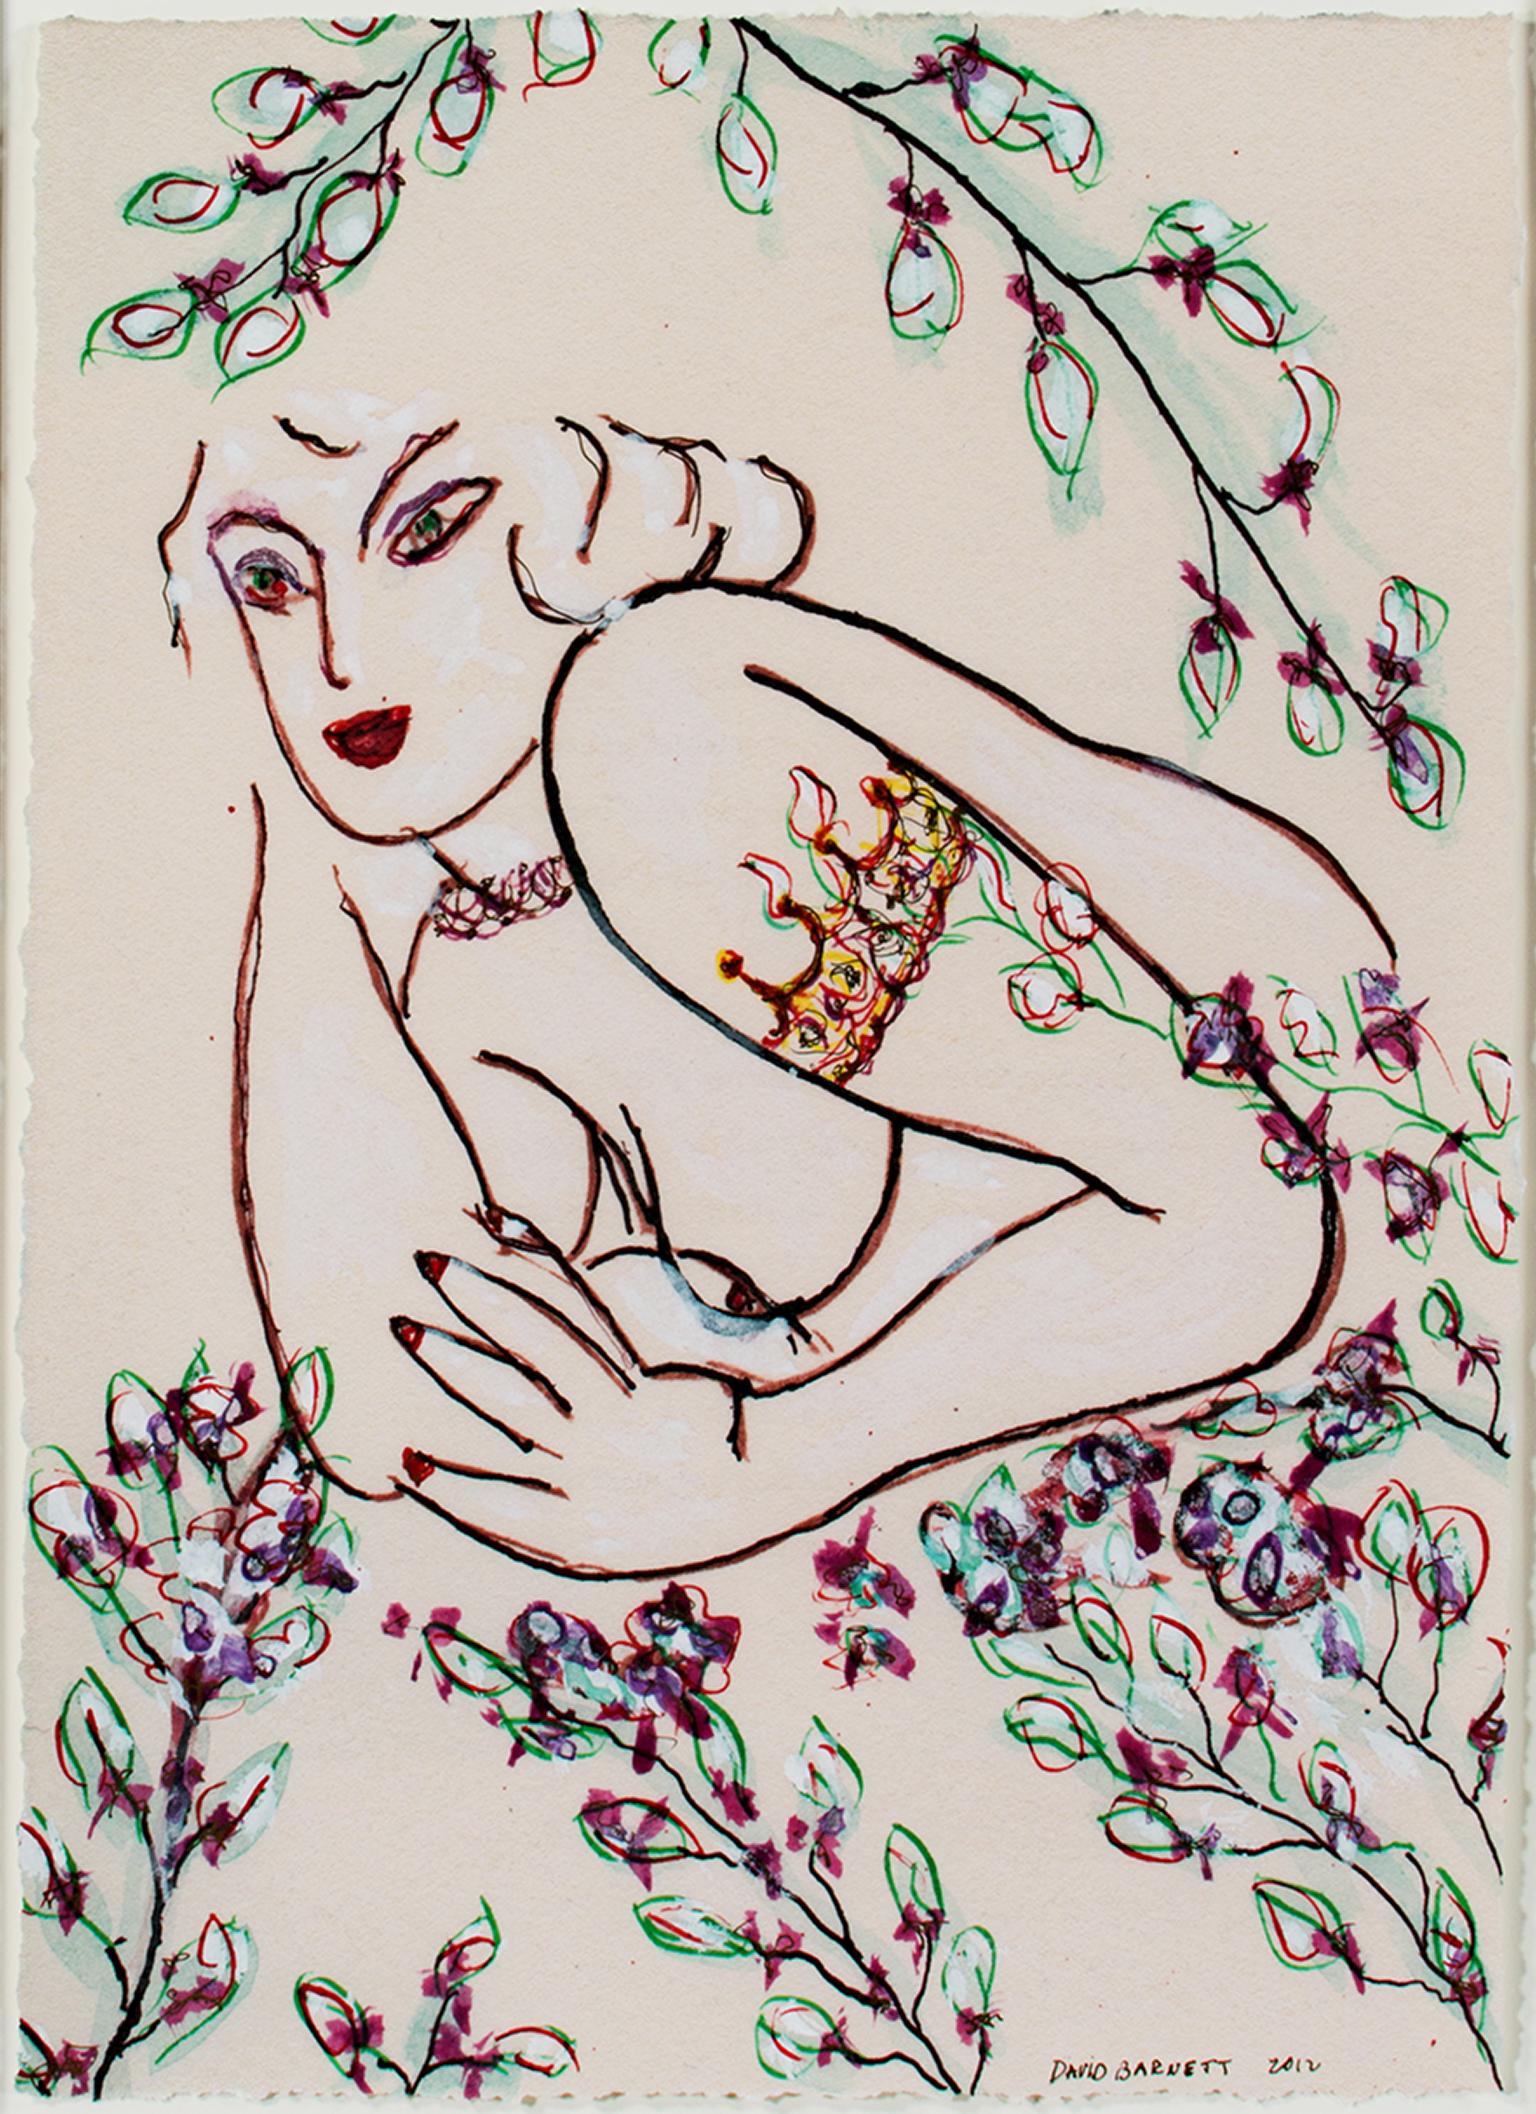 "Famous Artist Series: Tattooed Matisse Model Variation III" ist eine Originalarbeit in Mischtechnik von David Barnett, signiert und datiert unten rechts. Dieses von Matisse inspirierte Gemälde zeigt eine von Blumen umgebene Frau. Sie hat eine